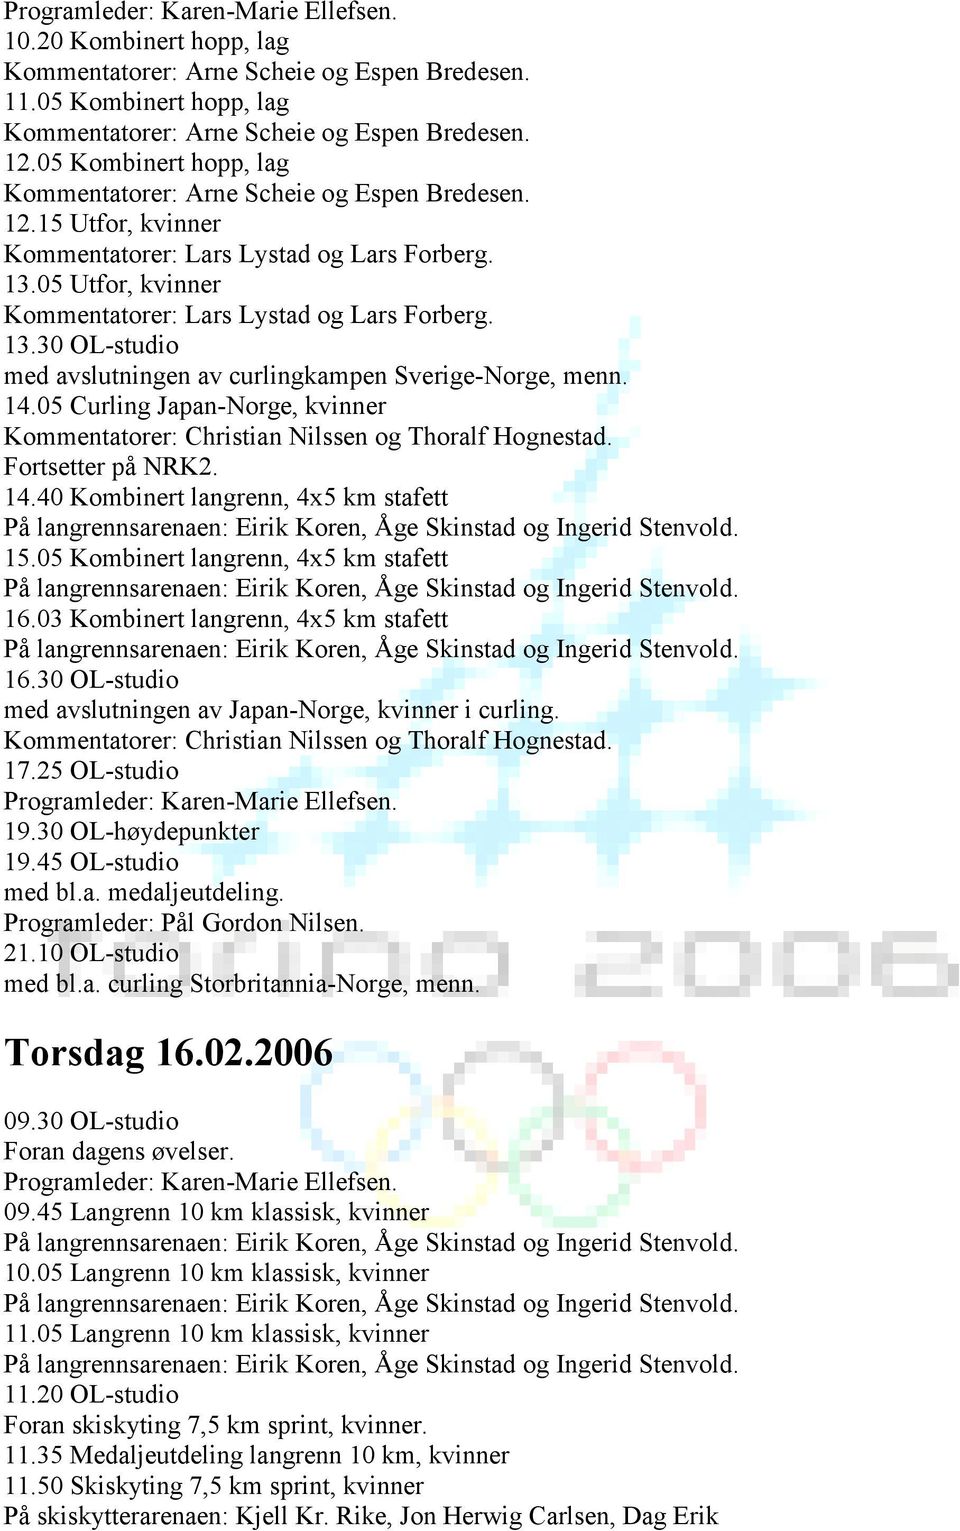 30 OL-studio med avslutningen av Japan-Norge, kvinner i curling. 17.25 OL-studio 21.10 OL-studio med bl.a. curling Storbritannia-Norge, menn. Torsdag 16.02.2006 09.